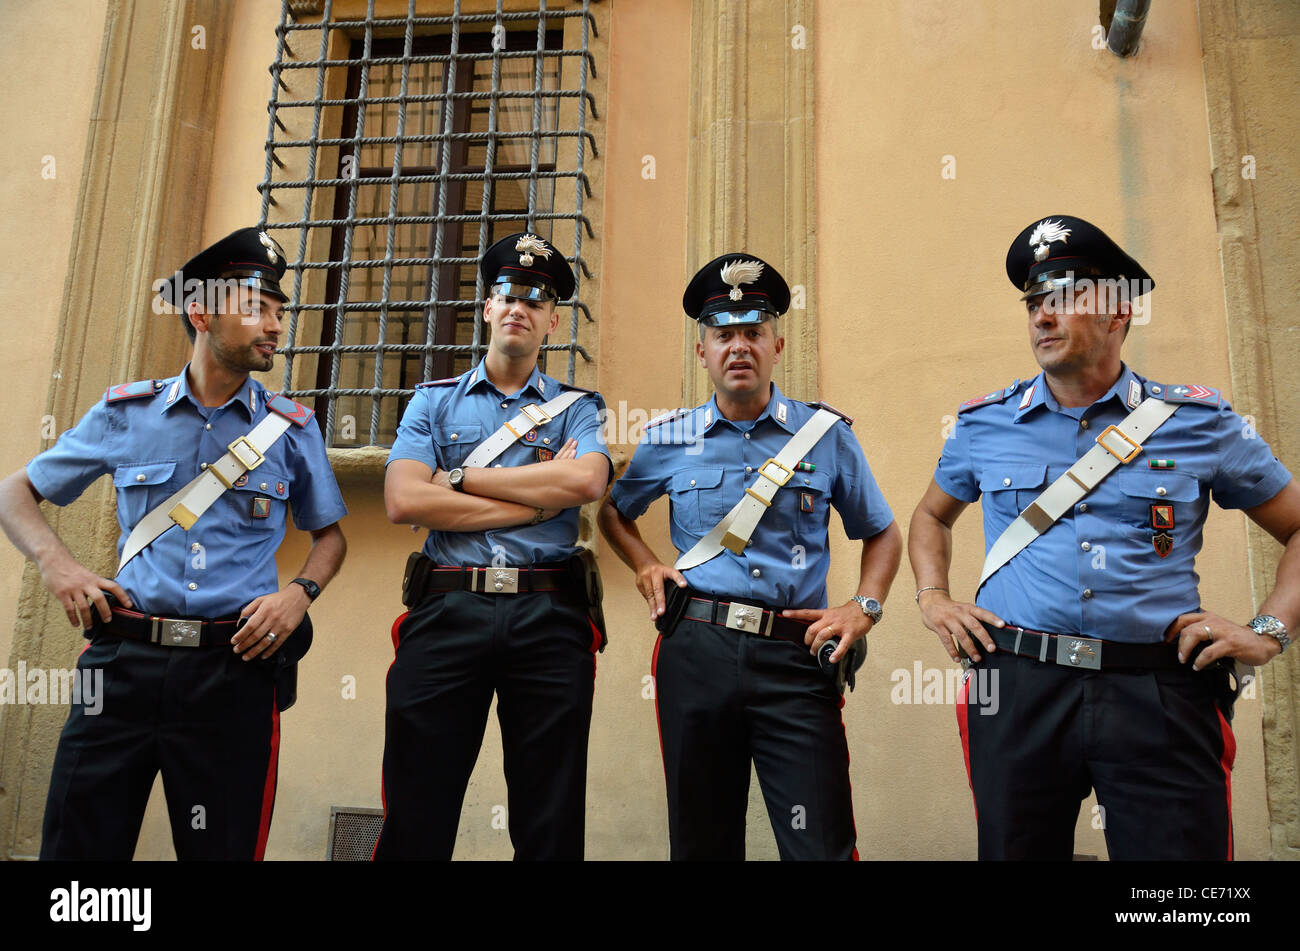 Poliziotti italiano - Carabinieri - in una fila, Siena, Toscana, Italia Foto Stock